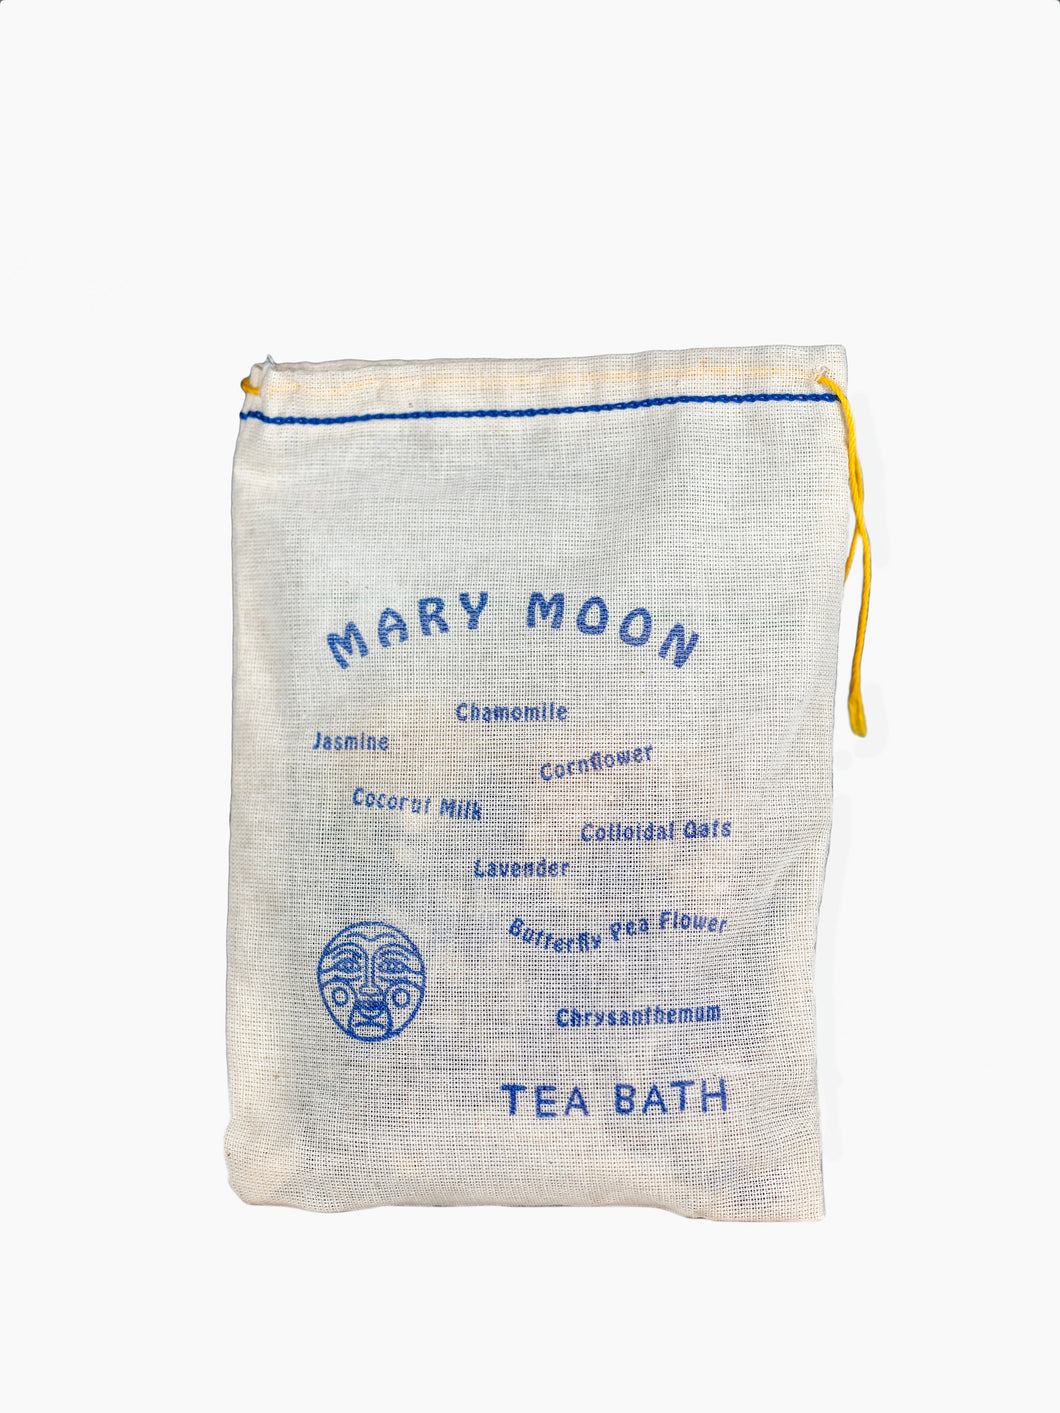 Mary Moon Tea Bath